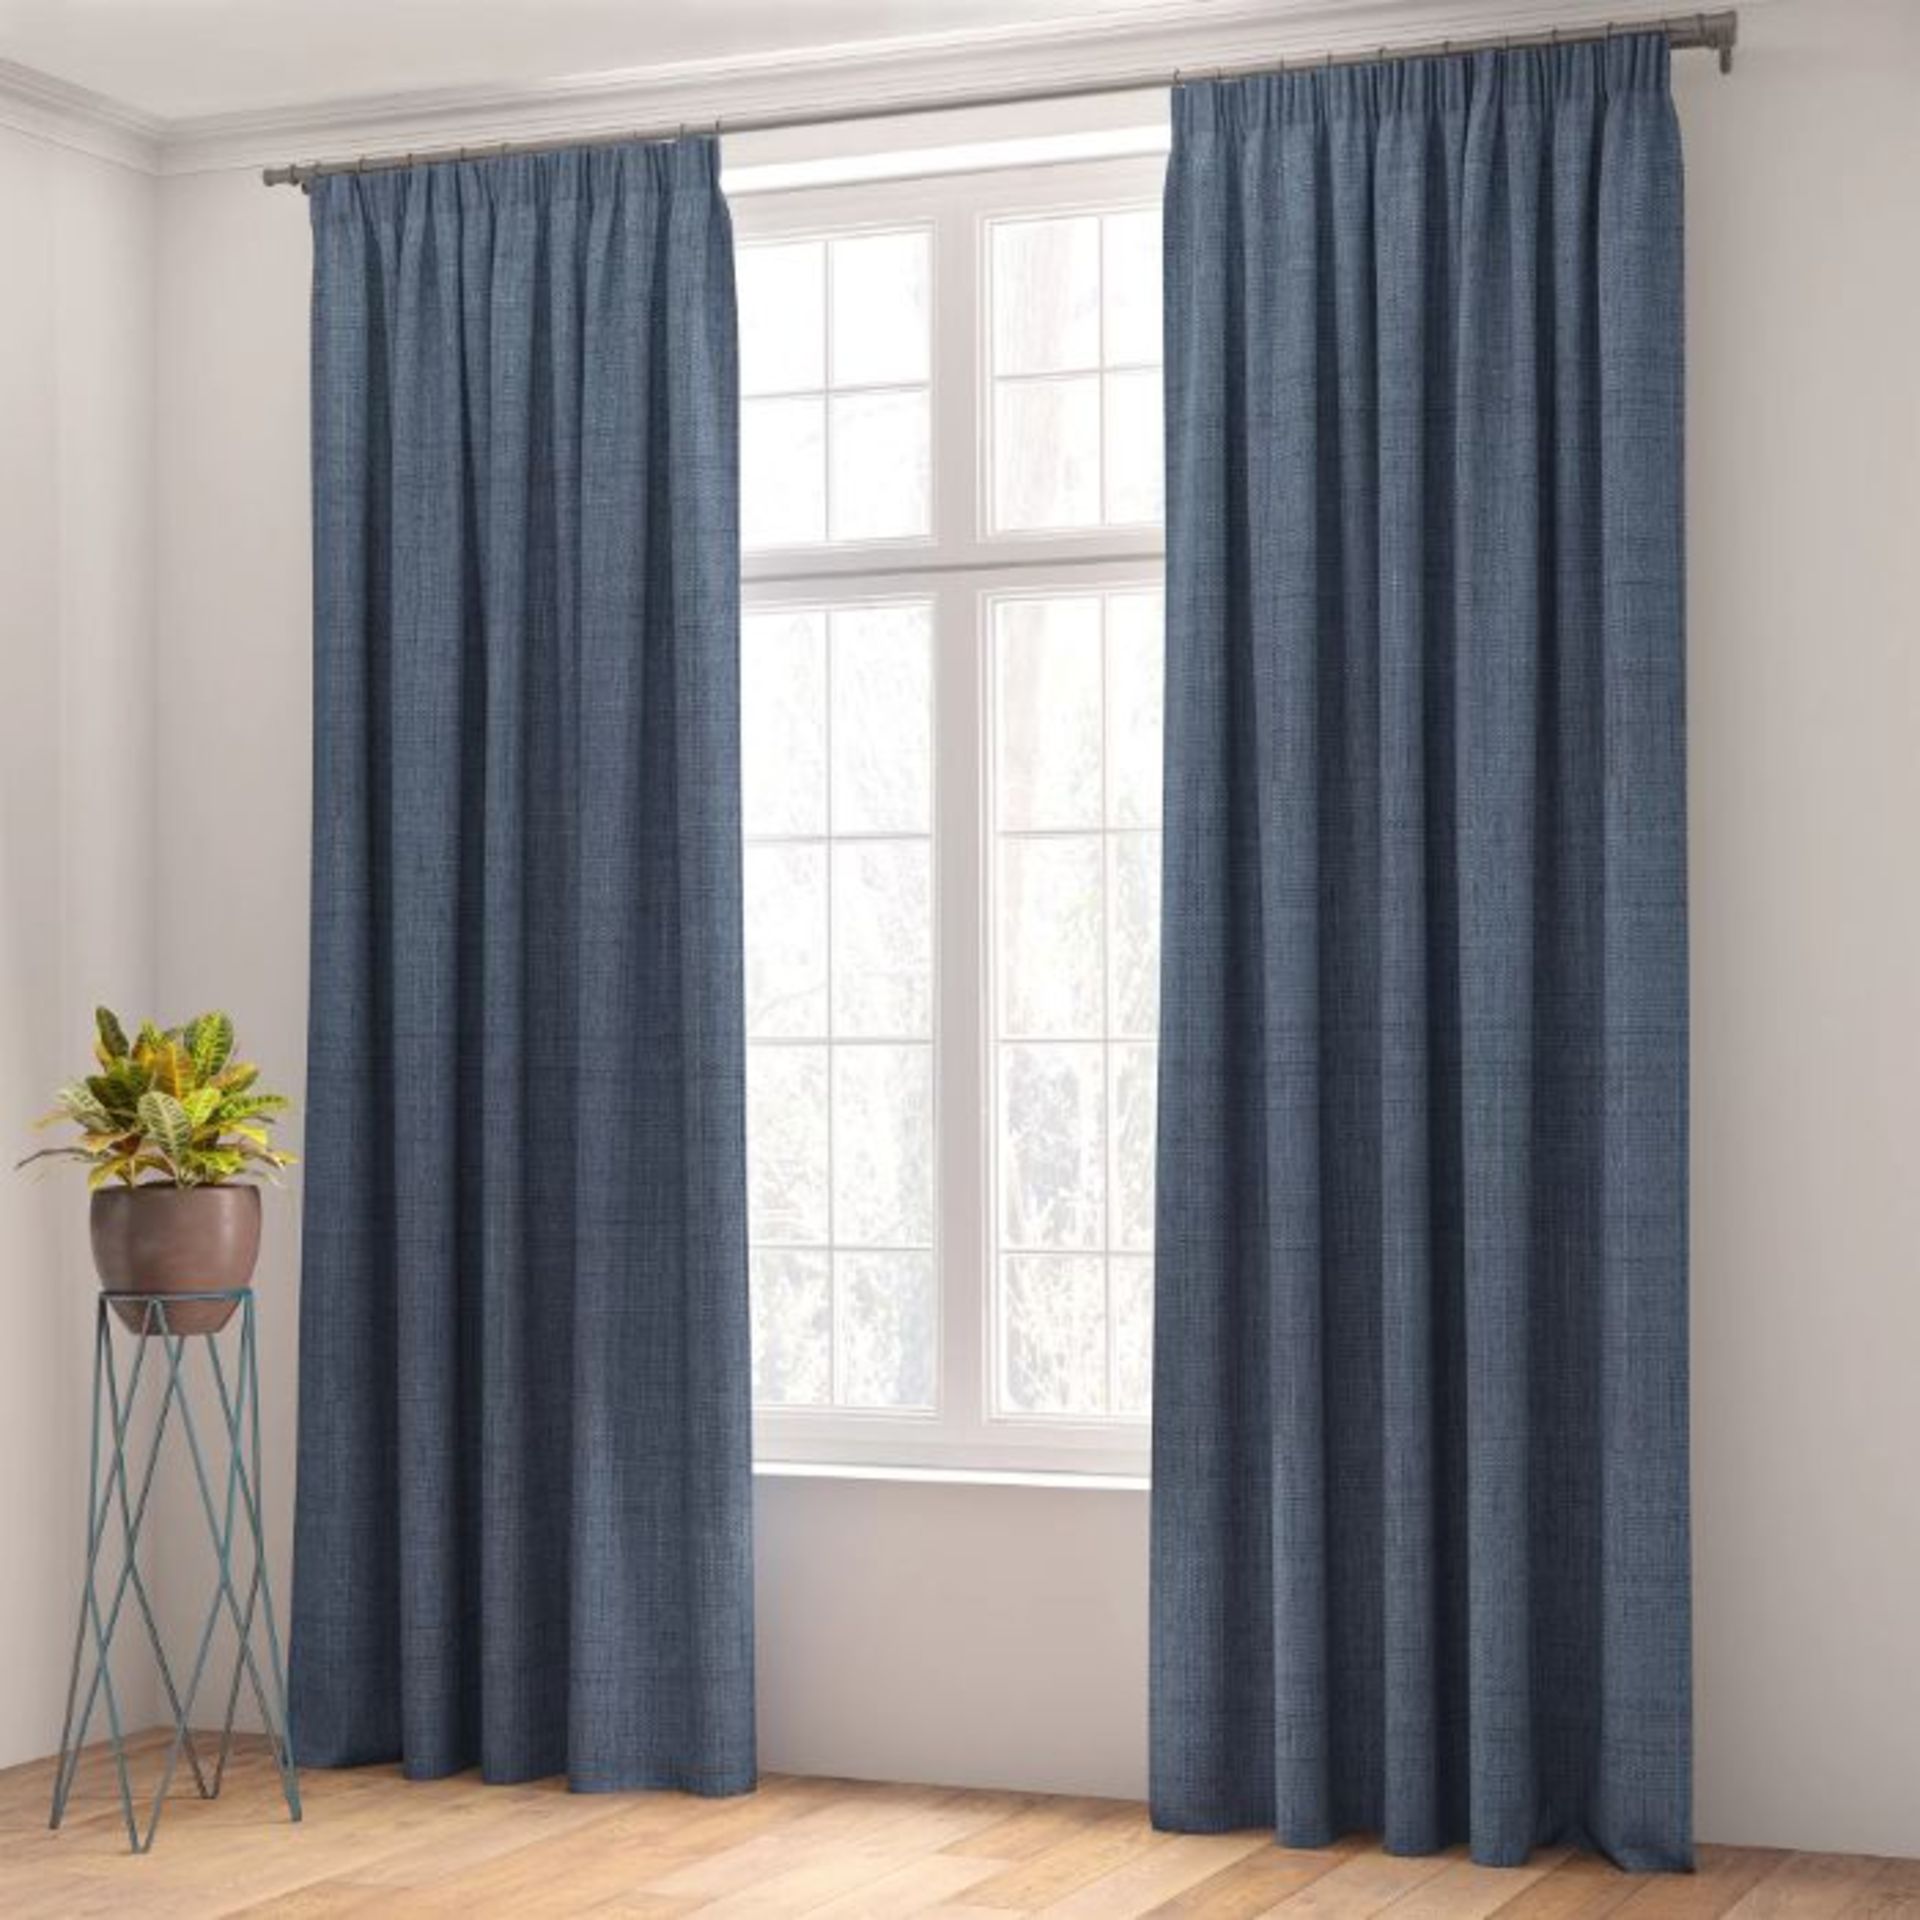 Shillings Blackout Thermal Curtains (BLUE) (168cm W x 137cm D) (DKBI1143)